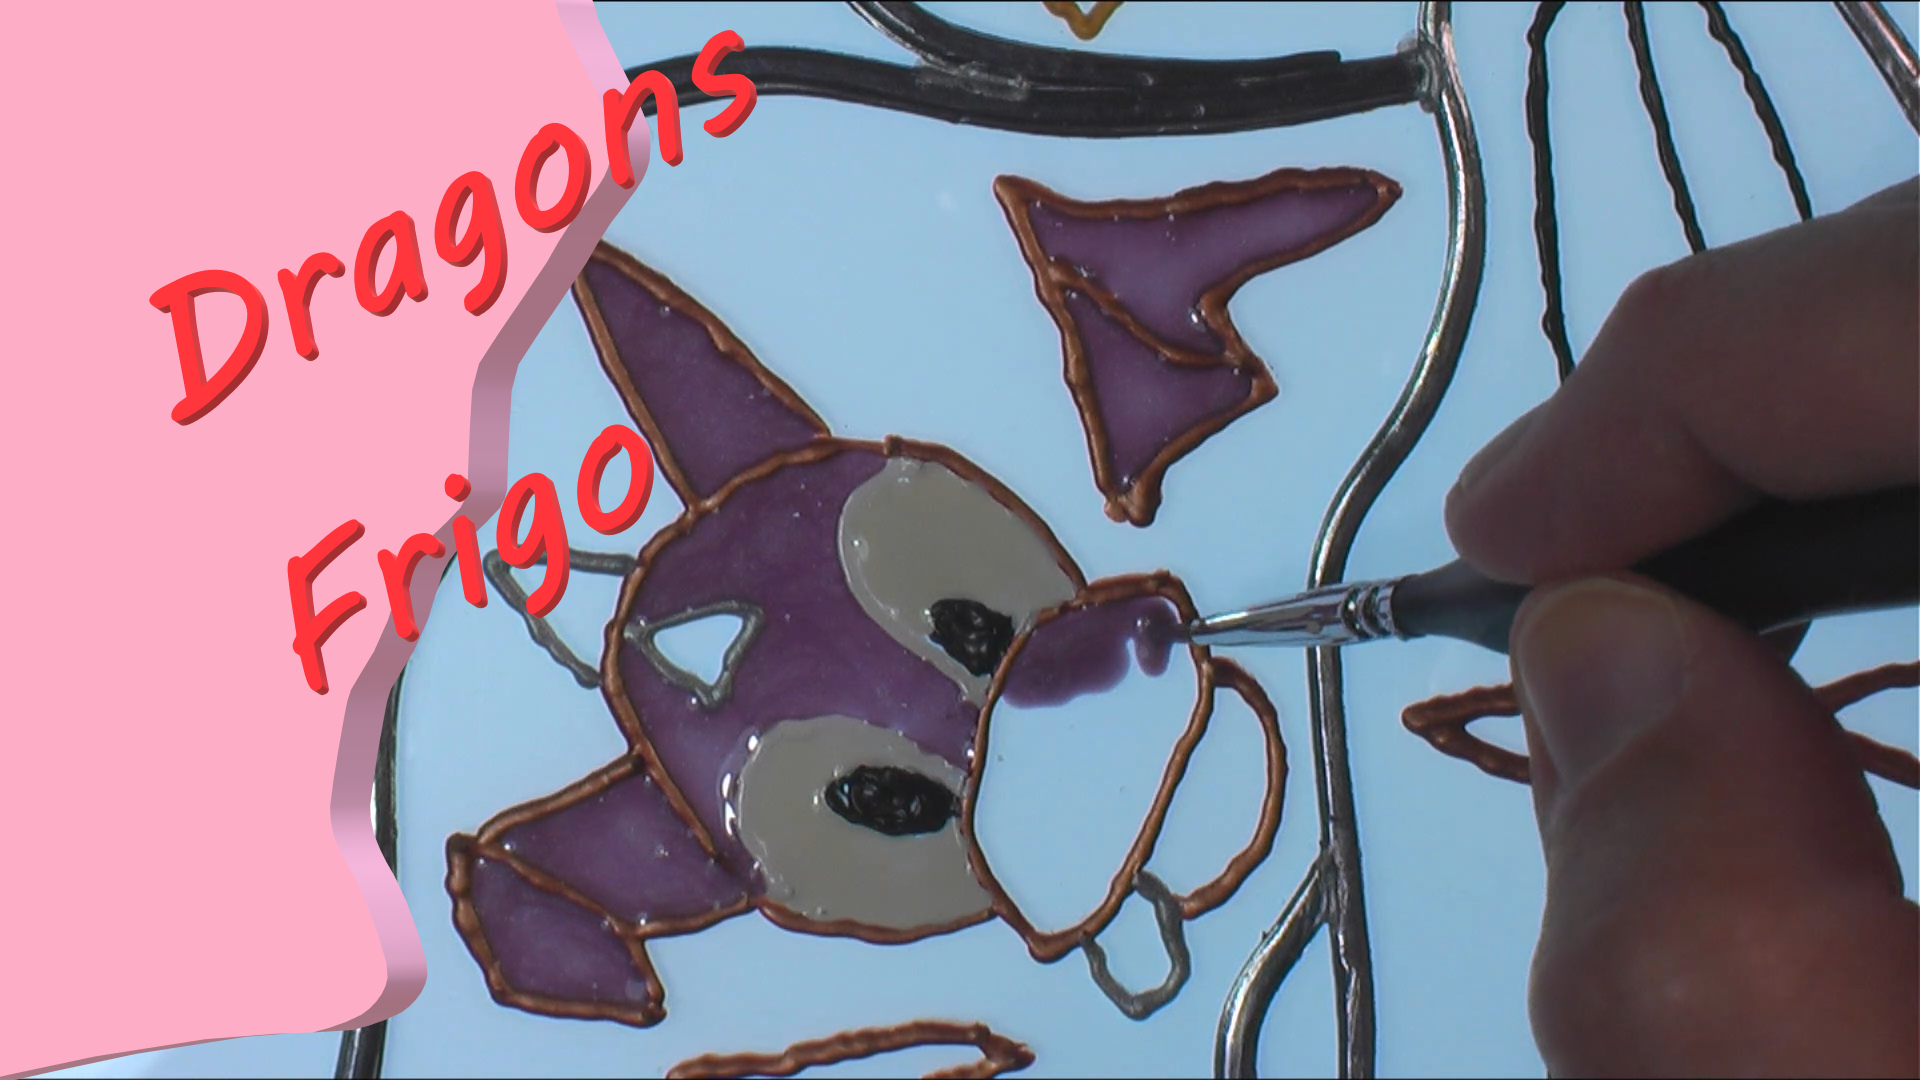 Dragons frigo – Décembre 2020 - Peinture sur acrylique - 216 x 279 mm